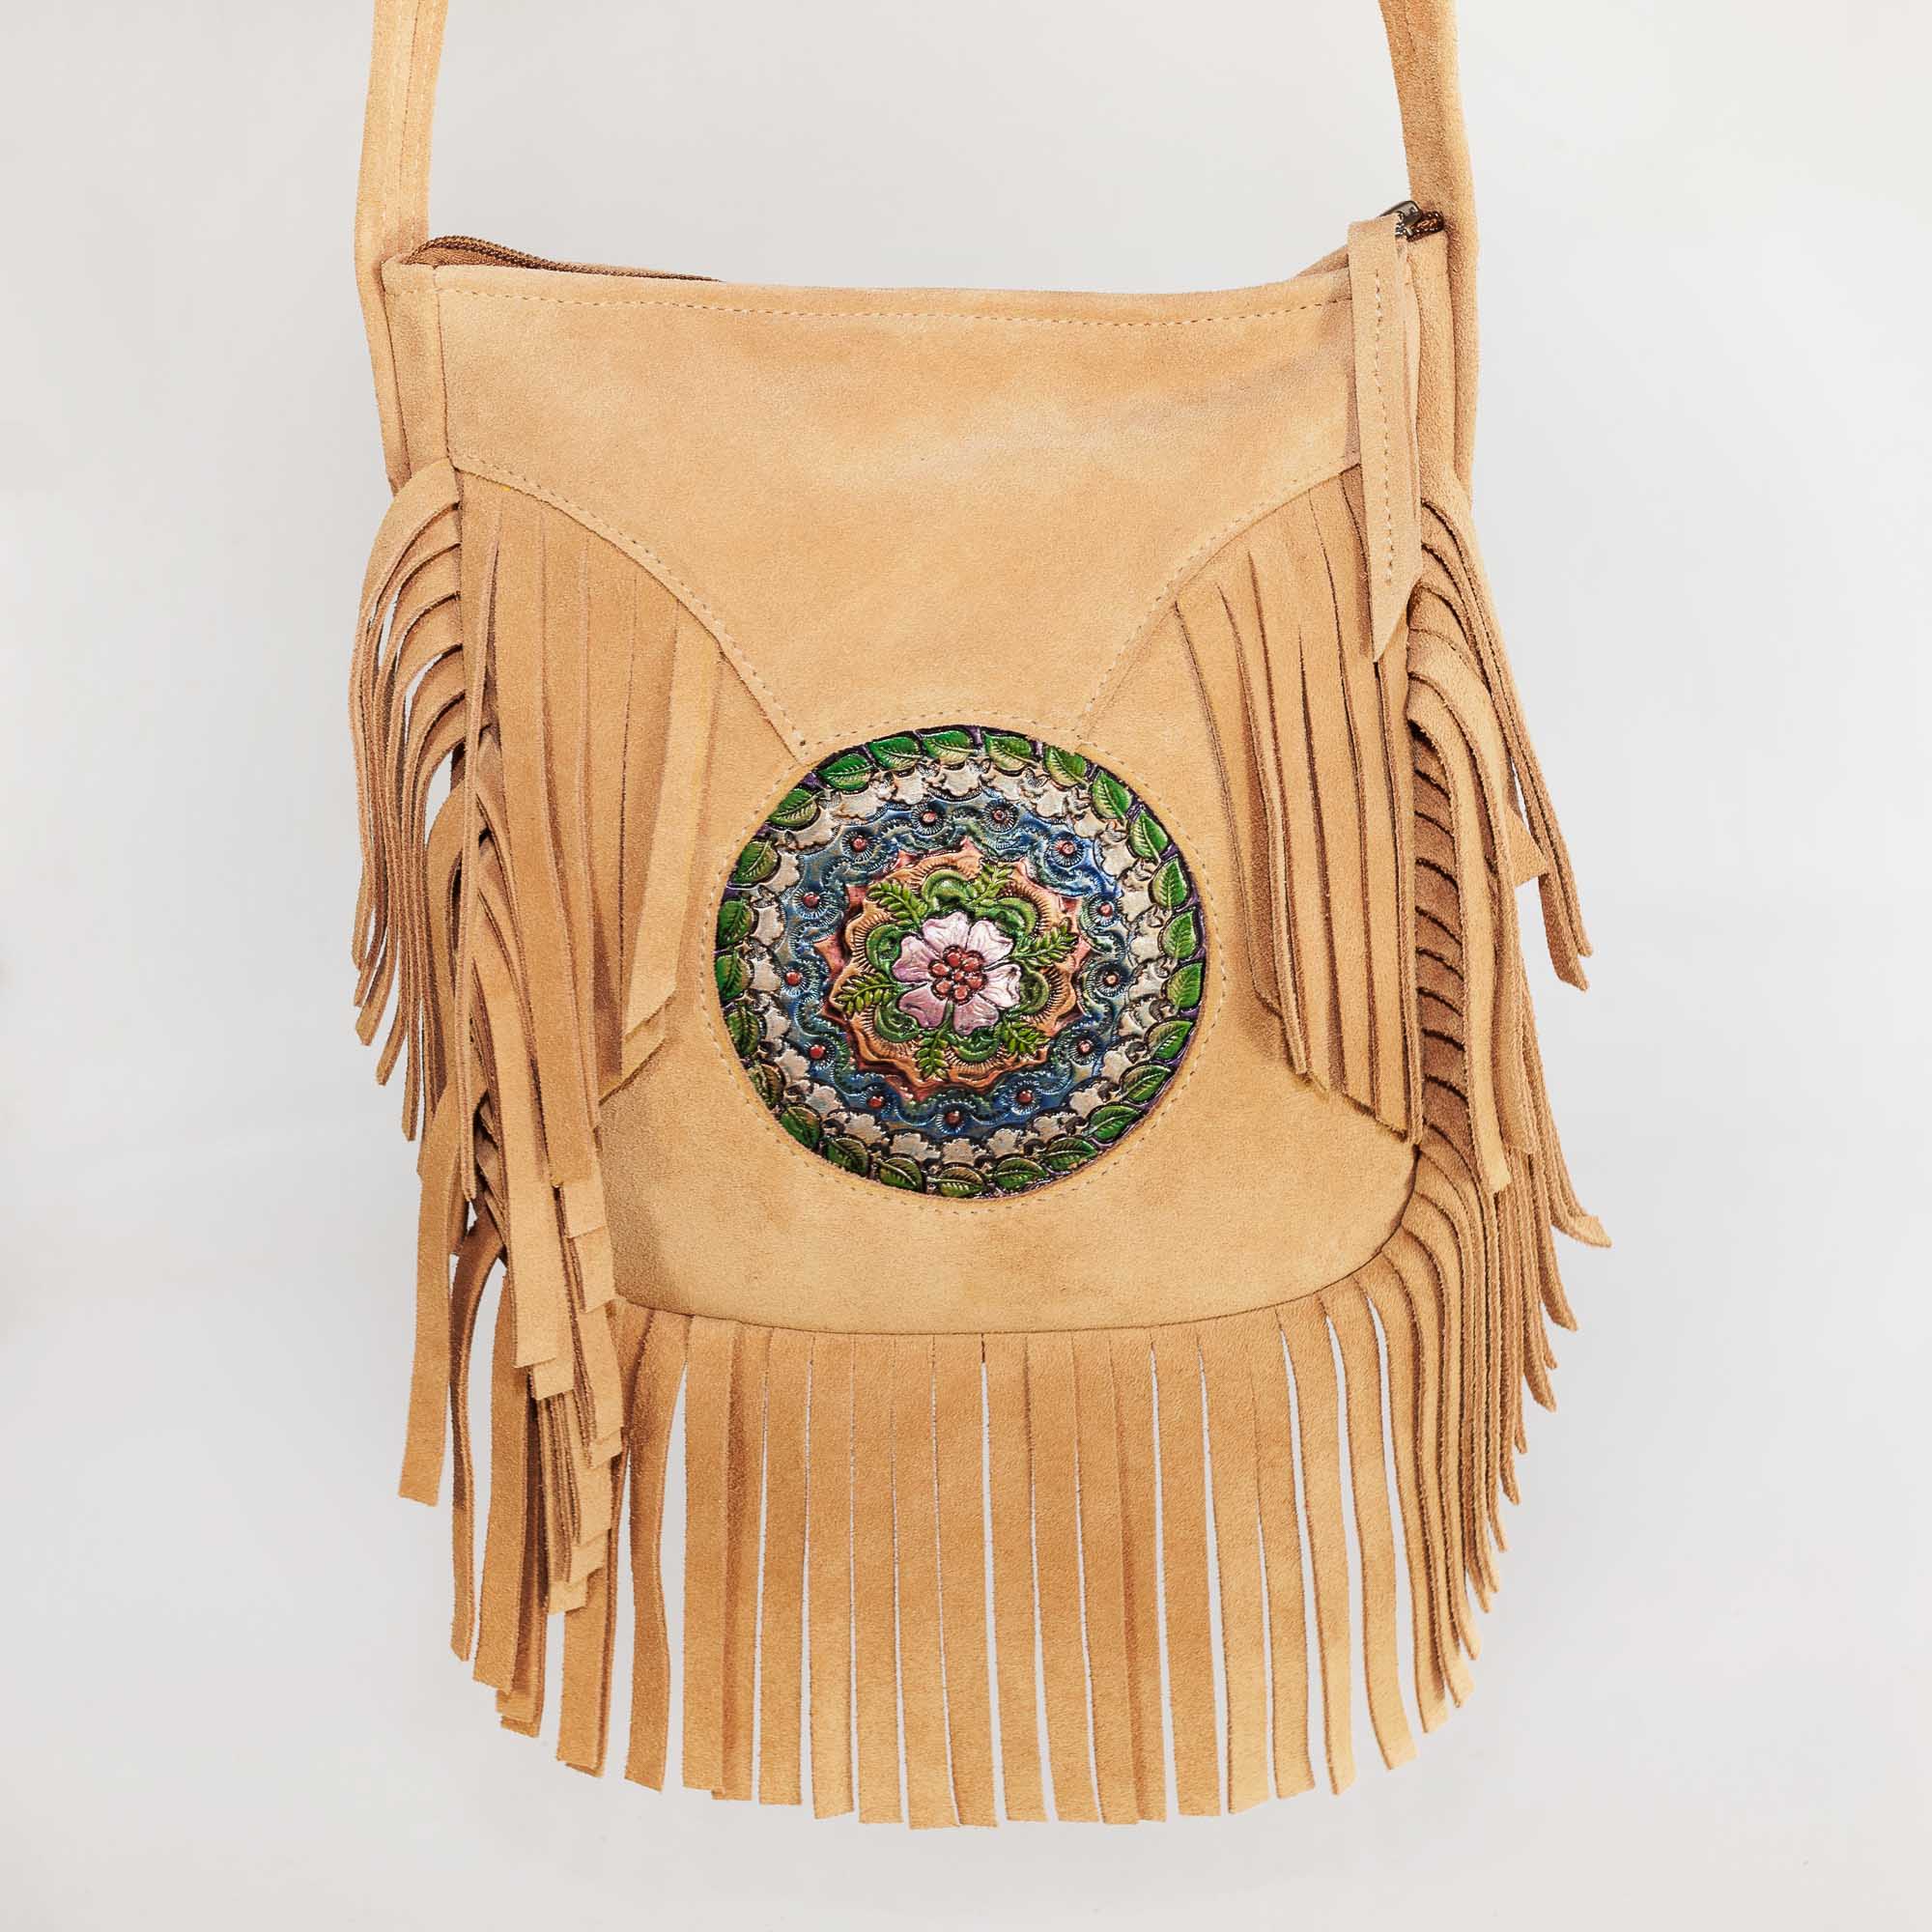 Hippy Fringe Bag - Awl Leather, Bellingen, Australia